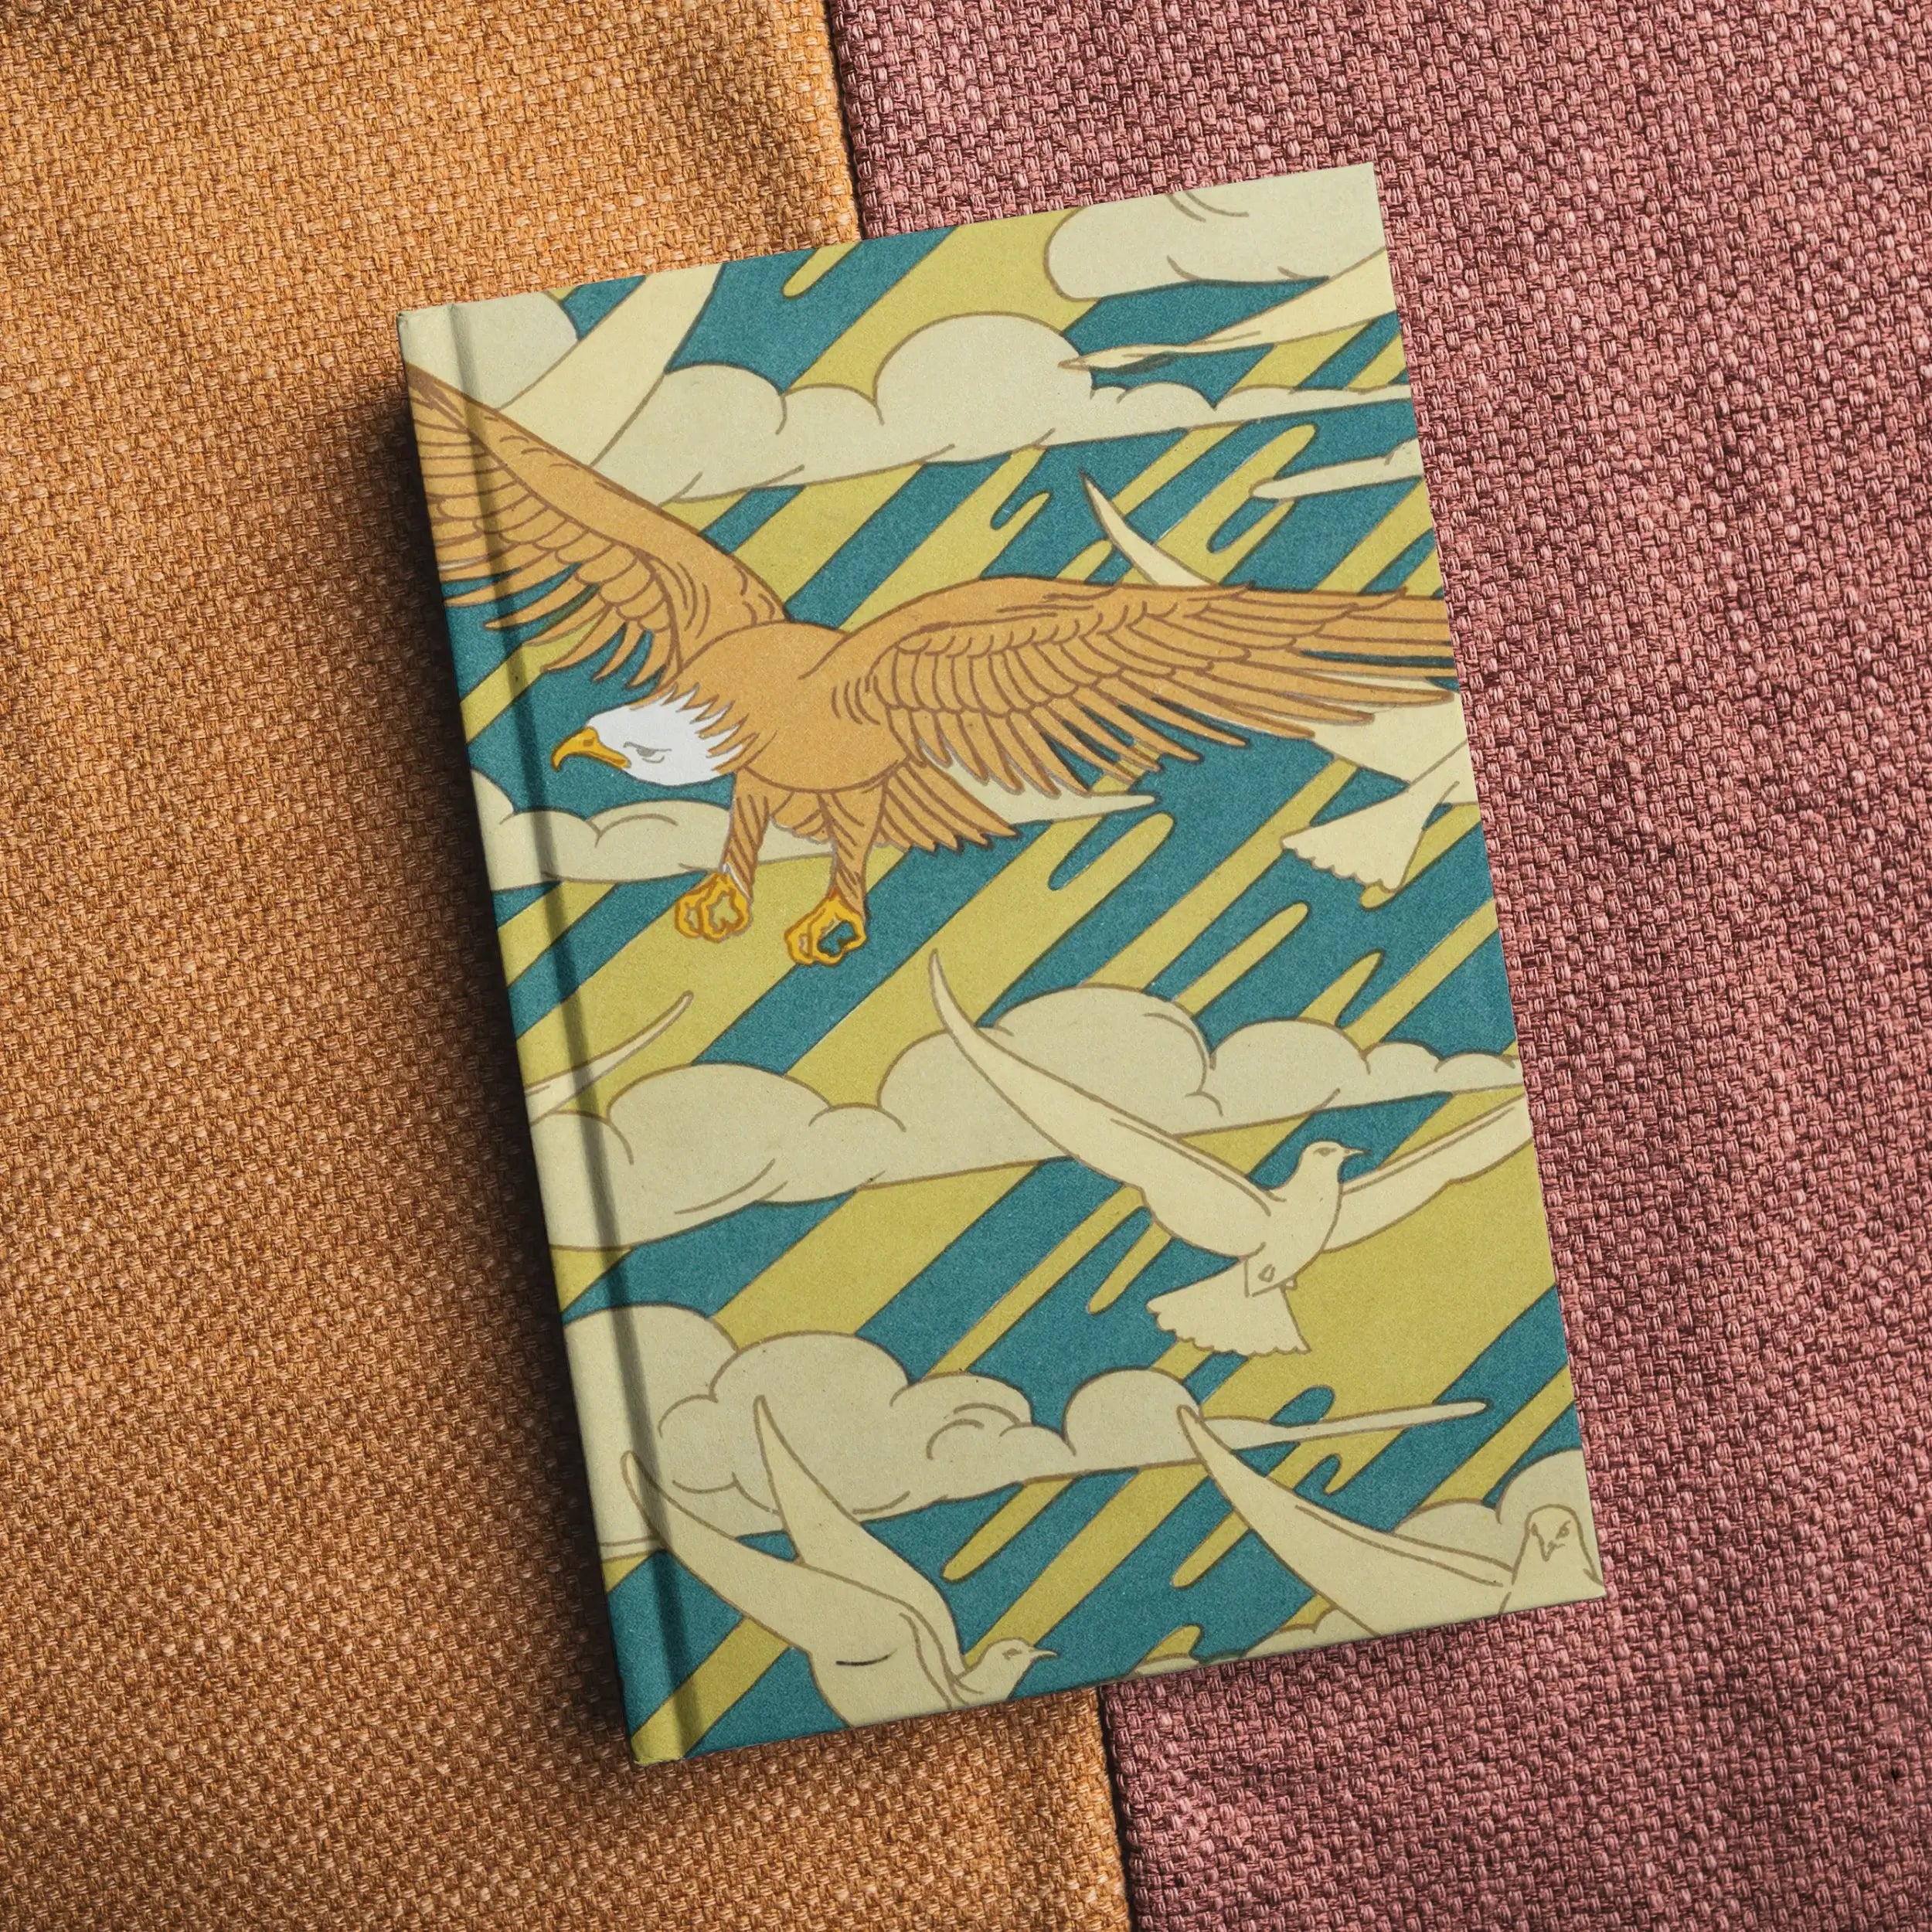 Aigles Et Pigeons - Maurice Pillard Verneuil Hardback Journal - Notebooks & Notepads - Aesthetic Art